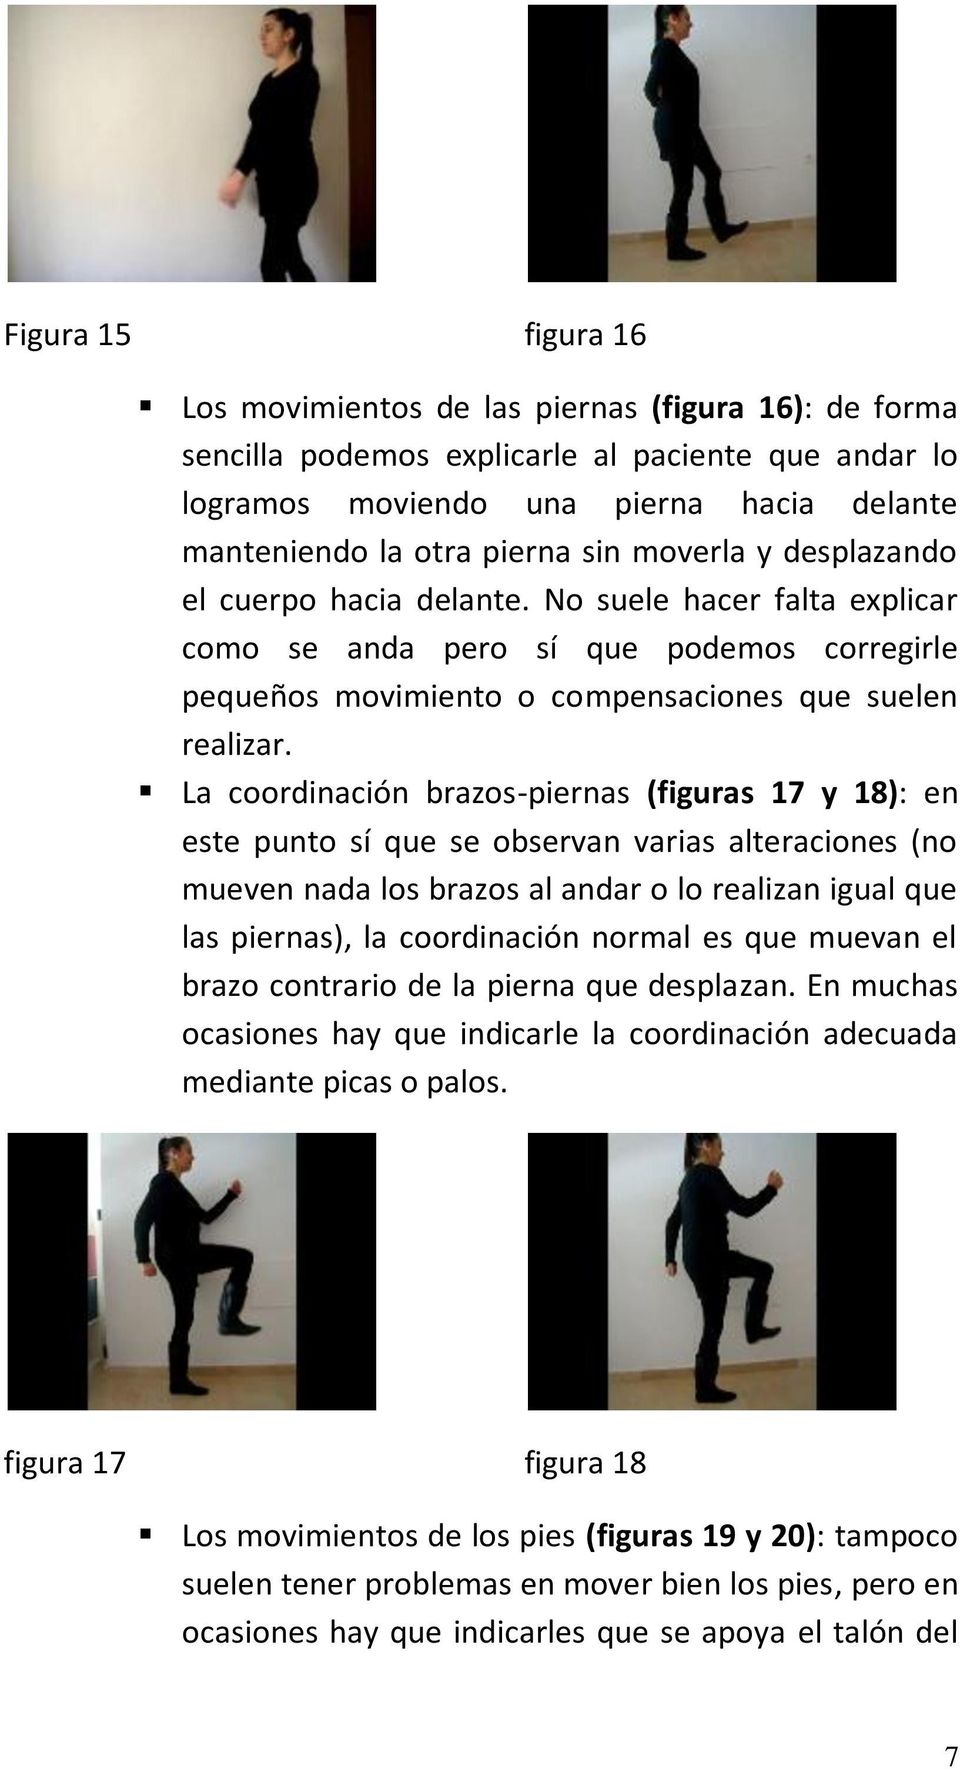 La coordinación brazos-piernas (figuras 17 y 18): en este punto sí que se observan varias alteraciones (no mueven nada los brazos al andar o lo realizan igual que las piernas), la coordinación normal